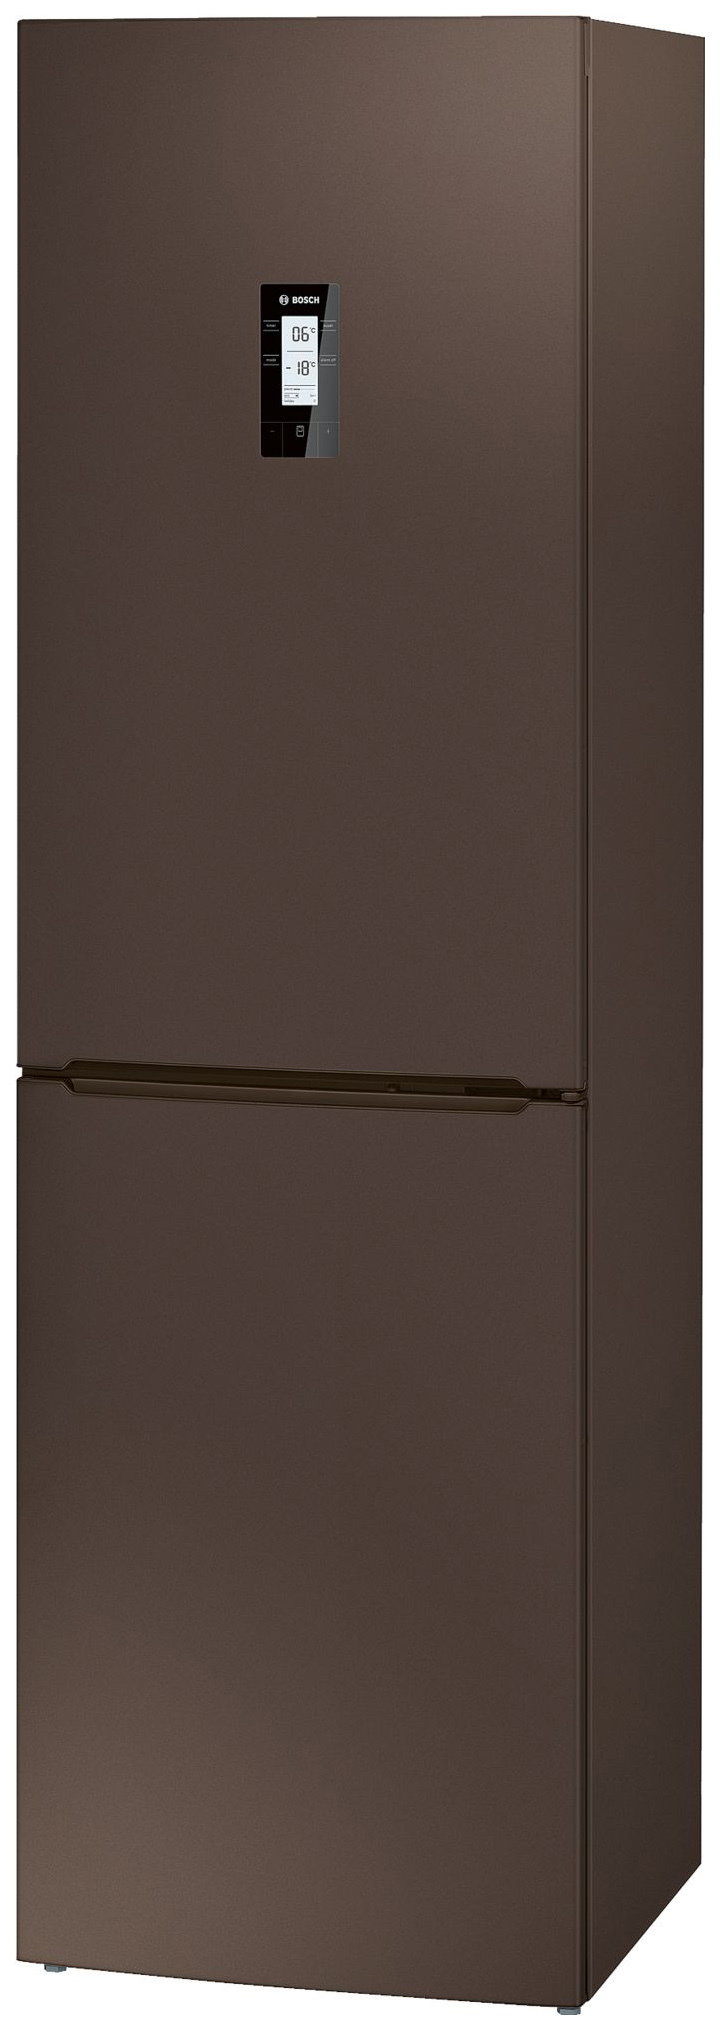 Холодильник Bosch KGN39XD18R коричневый подставка для обуви с сиденьем 3 яруса 65×32×48 5 см коричневый